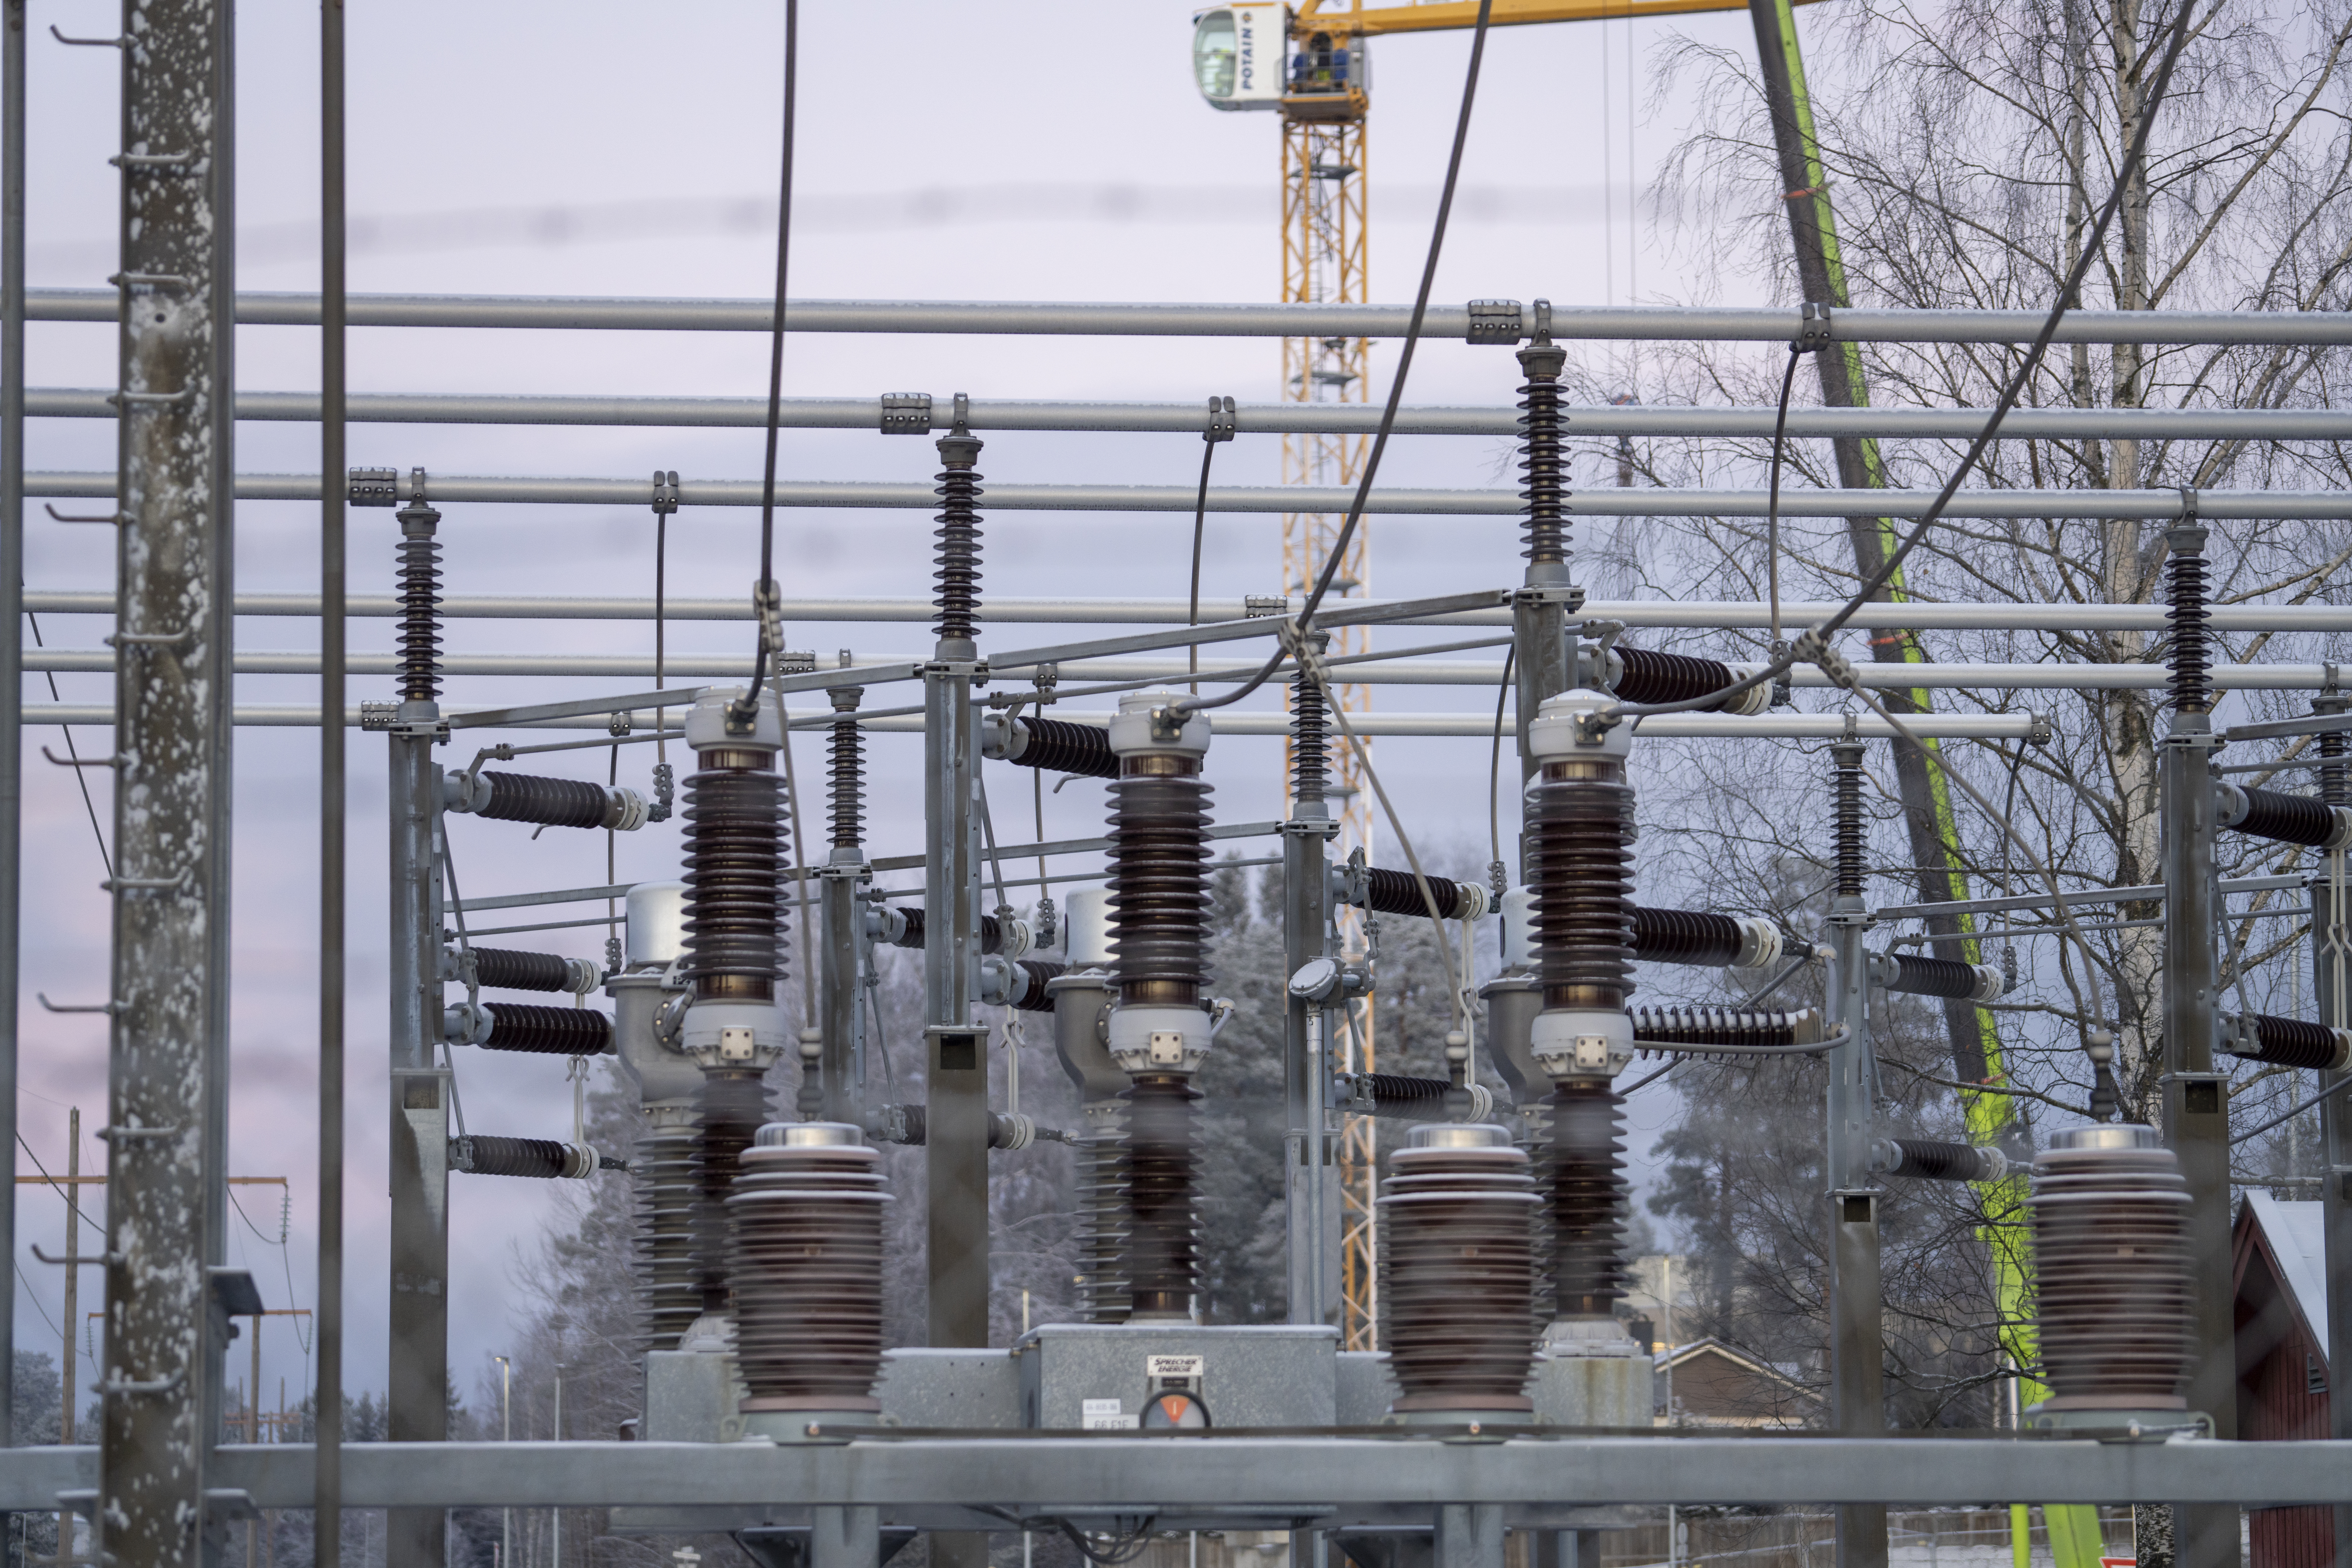 Etterlyser reforhandling av strømkablene til Europa: – Regjeringen må våkne